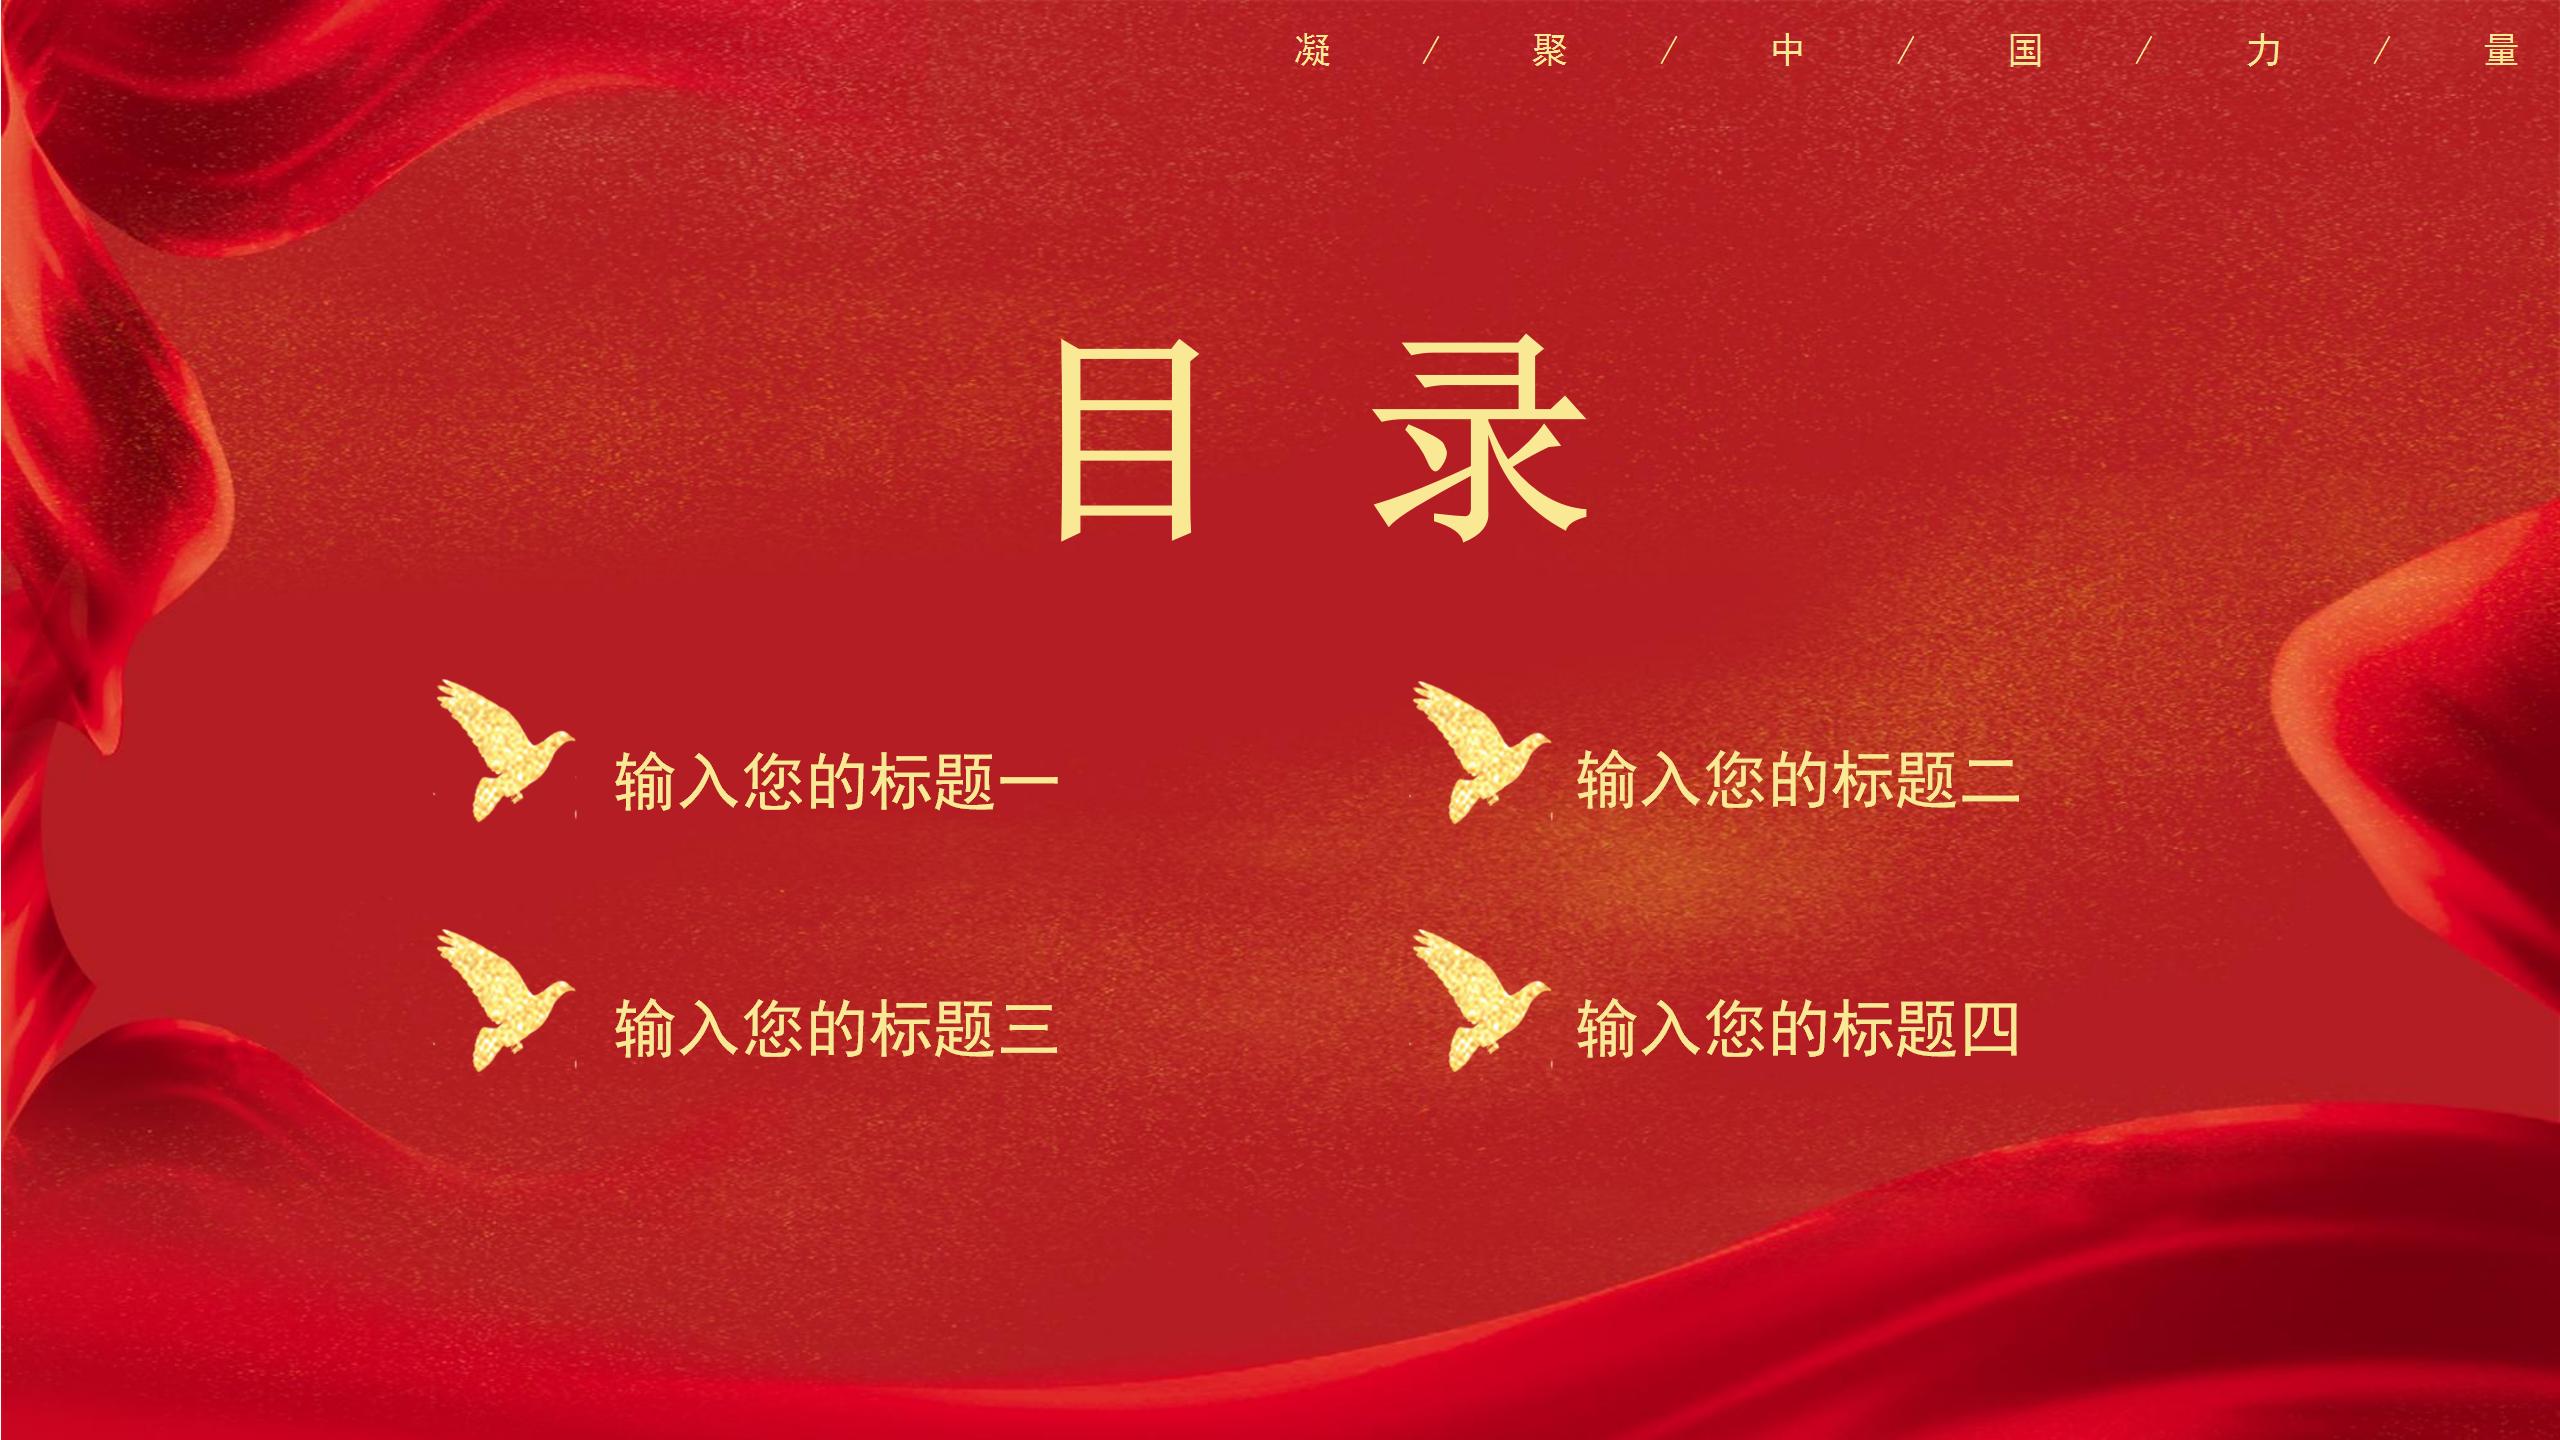 免费下载相关字体/摄影图/音频仅供参考i红色中国风永远跟党走ppt模板